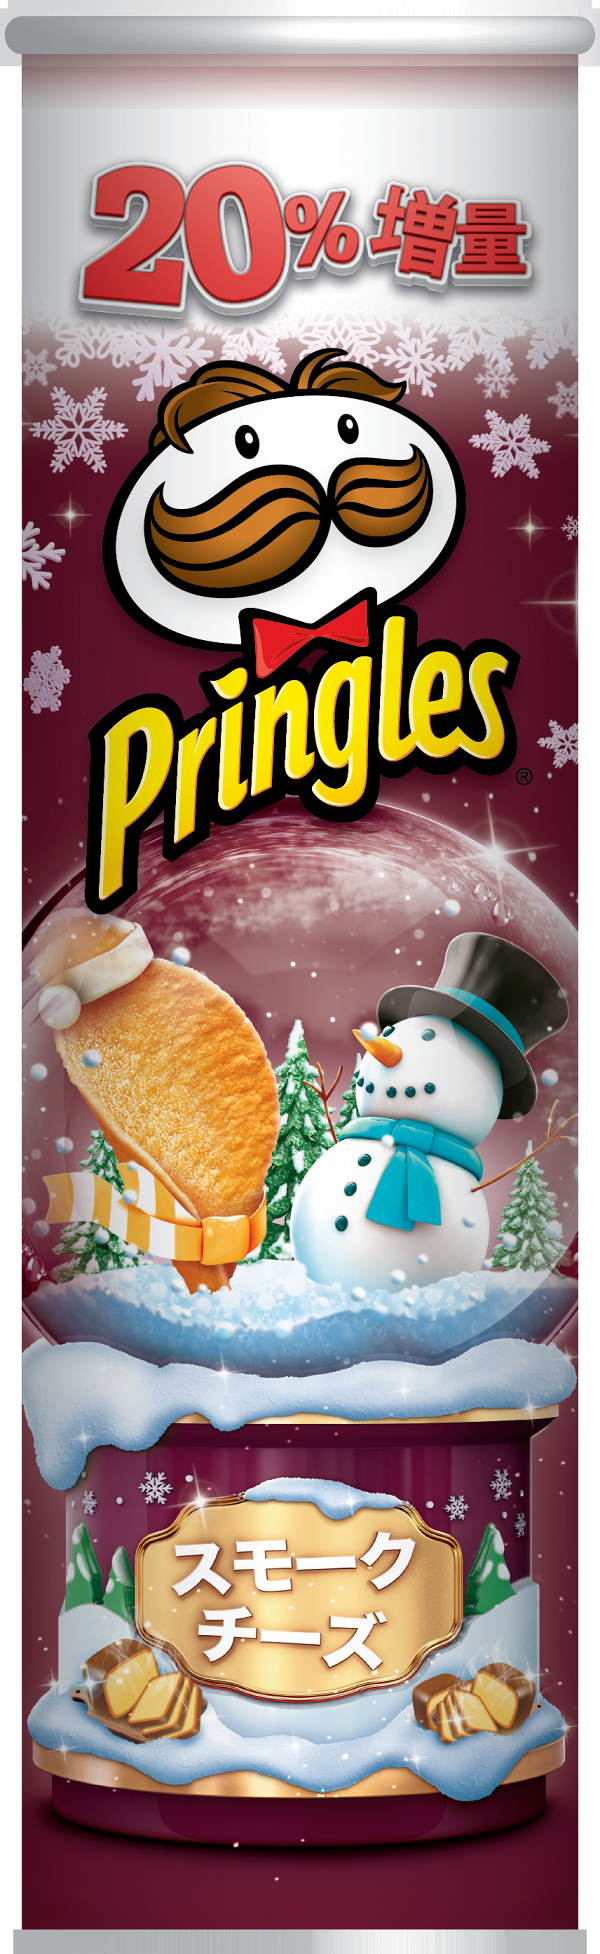 Pringles品客推聖誕期間限定煙燻芝士味薯片